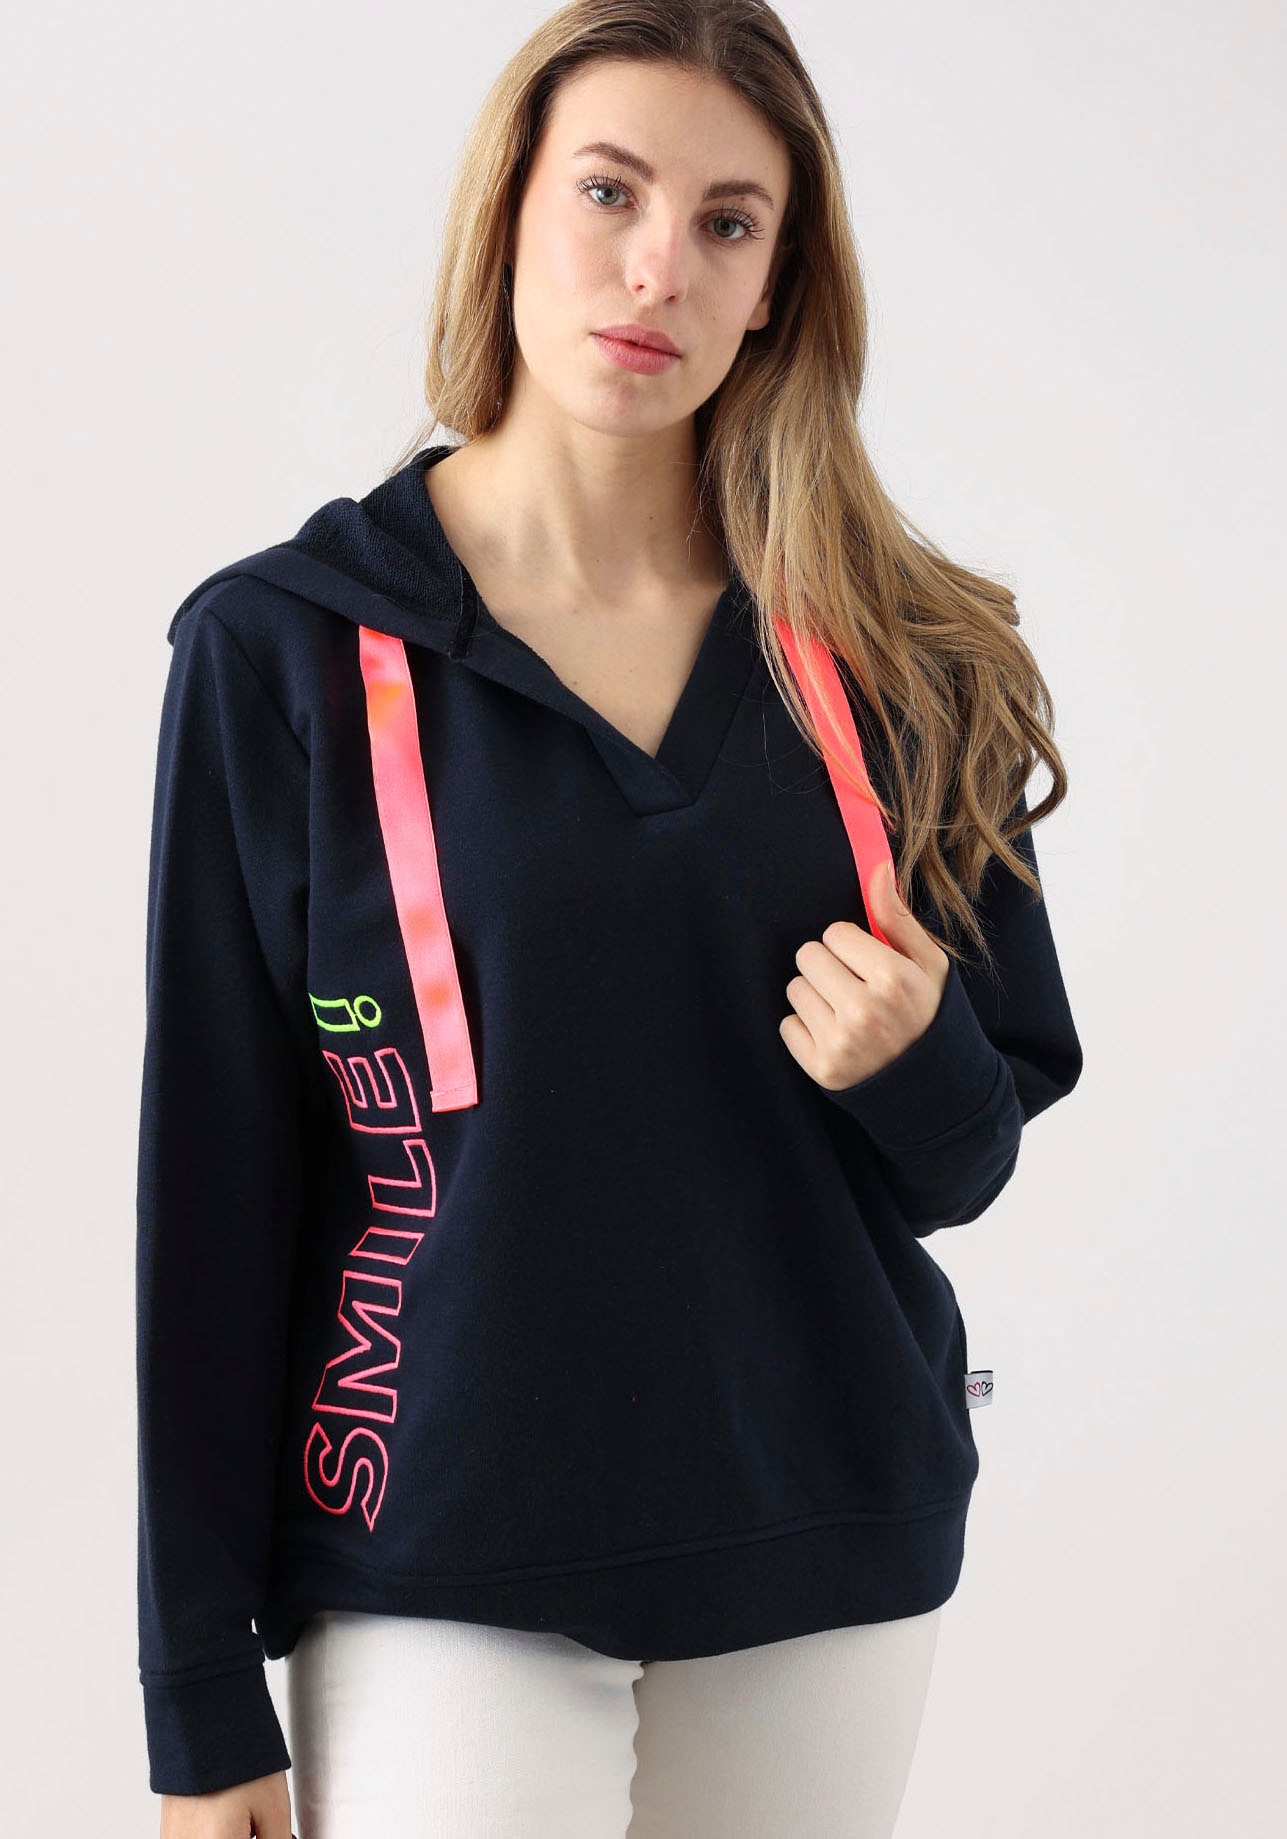 Zwillingsherz Sweatshirt »Smile«, mit V-Ausschnitt, Frontprint durch das Wort Smile, neonfarben